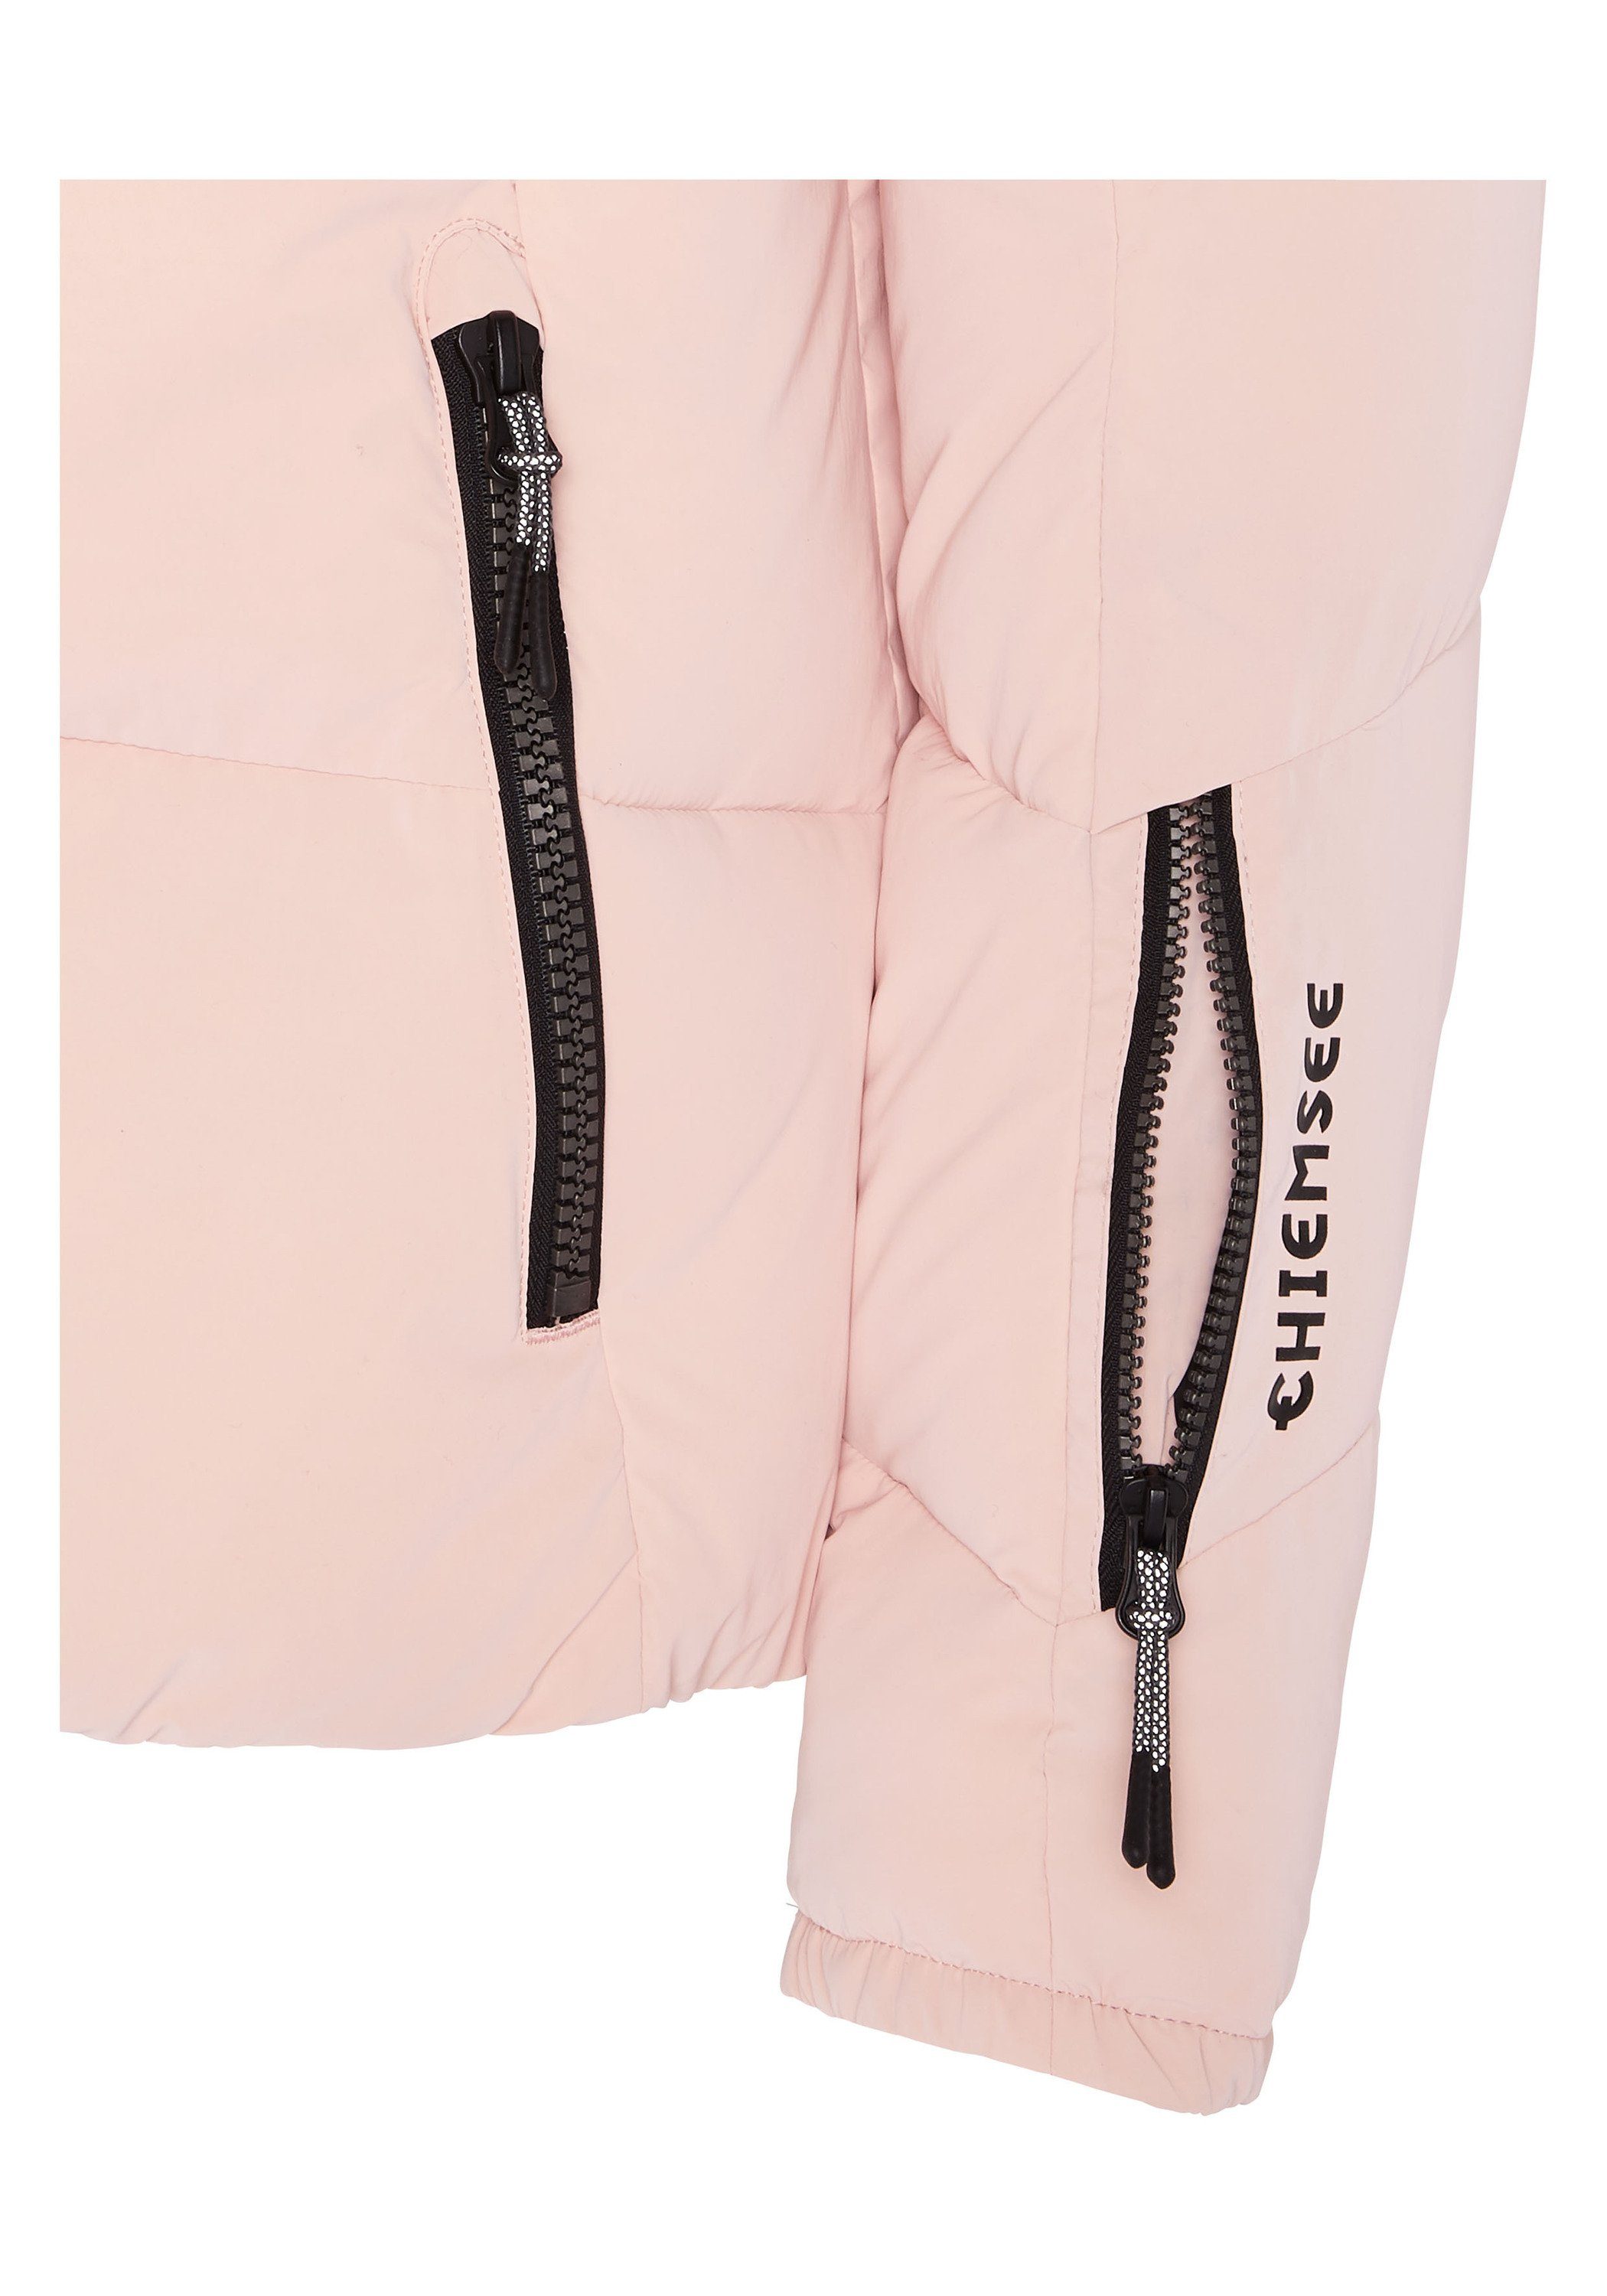 Chiemsee Skijacke 1 Reißverschlusstaschen hell Skijacke mit rosa